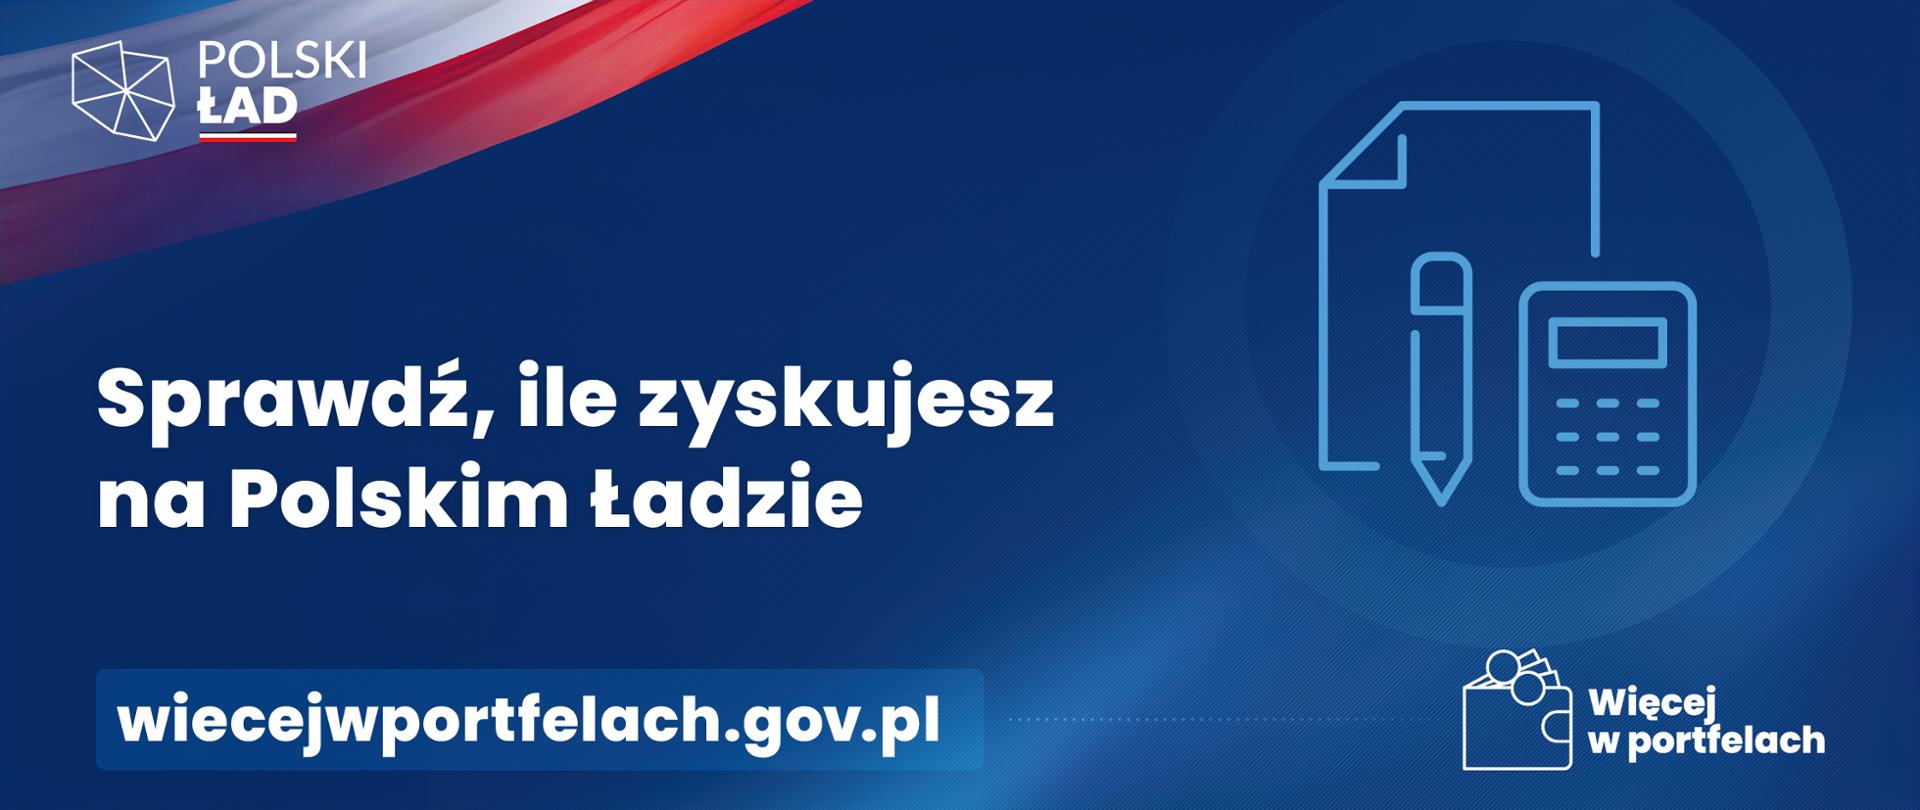 Napis: Sprawdź, ile zyskujesz na Polskim Ładzie